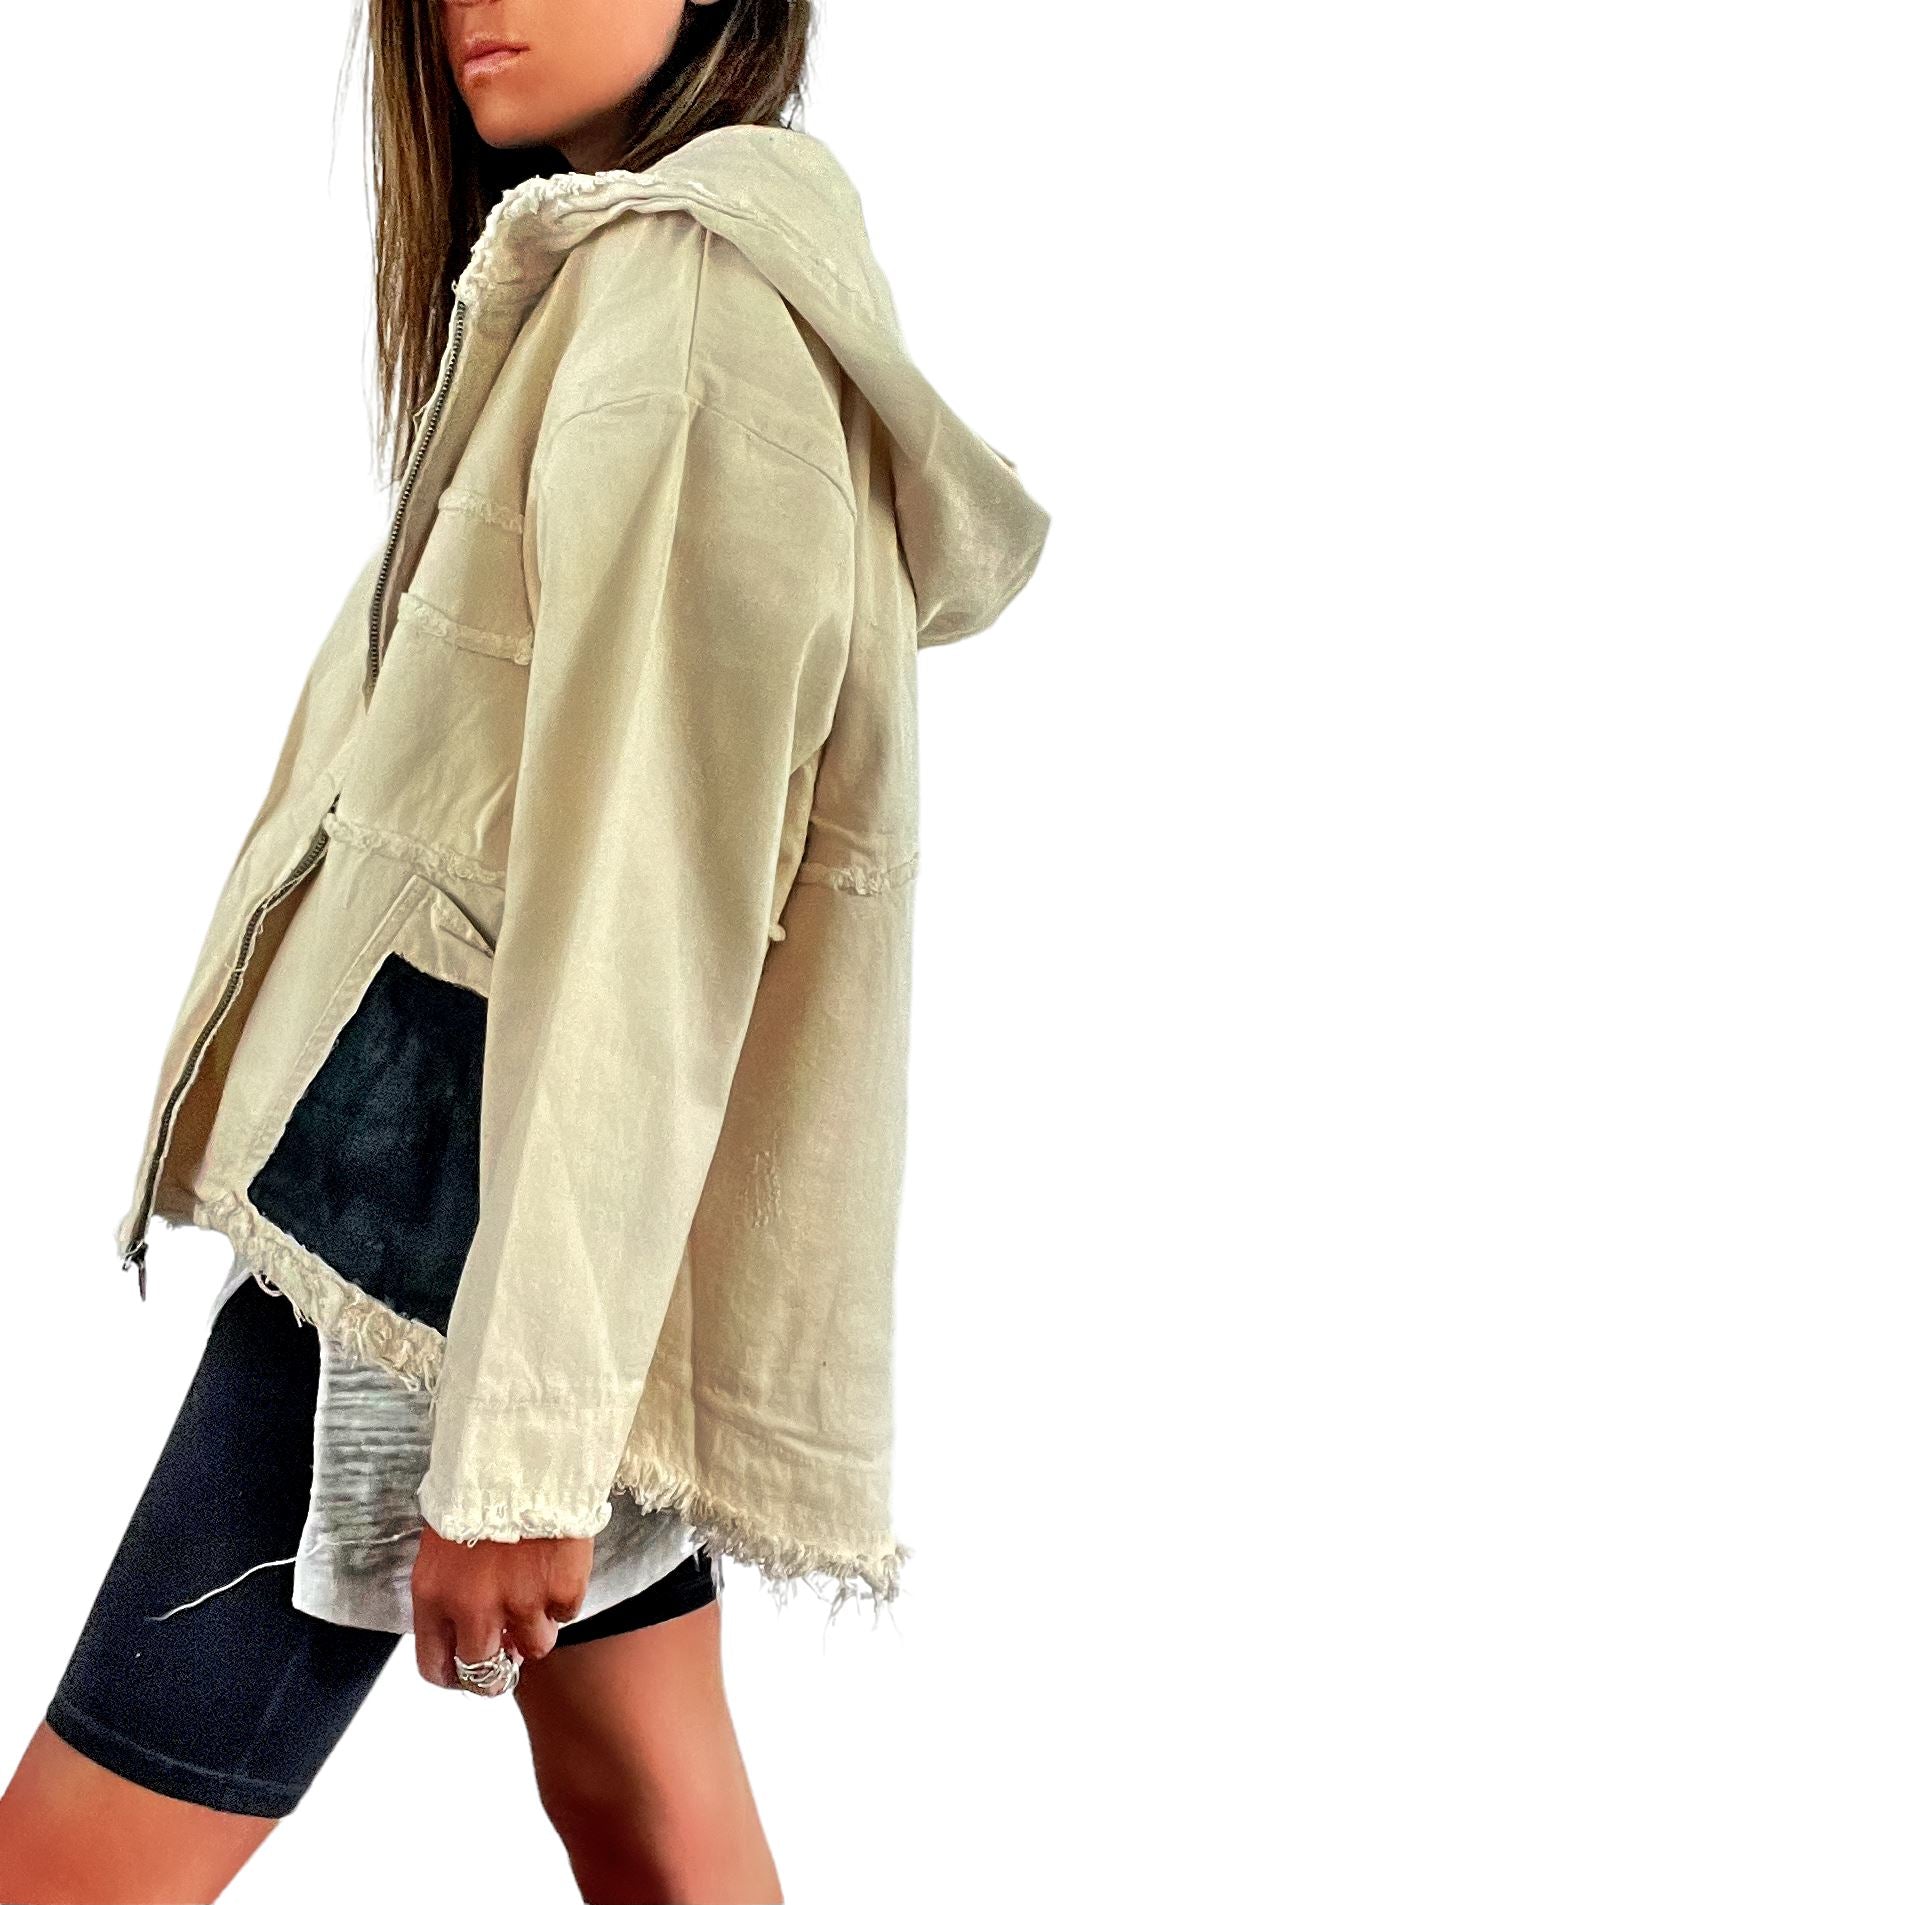 Buy Basic But Personalized' Ivory Denim Jacket by Wren + Glory